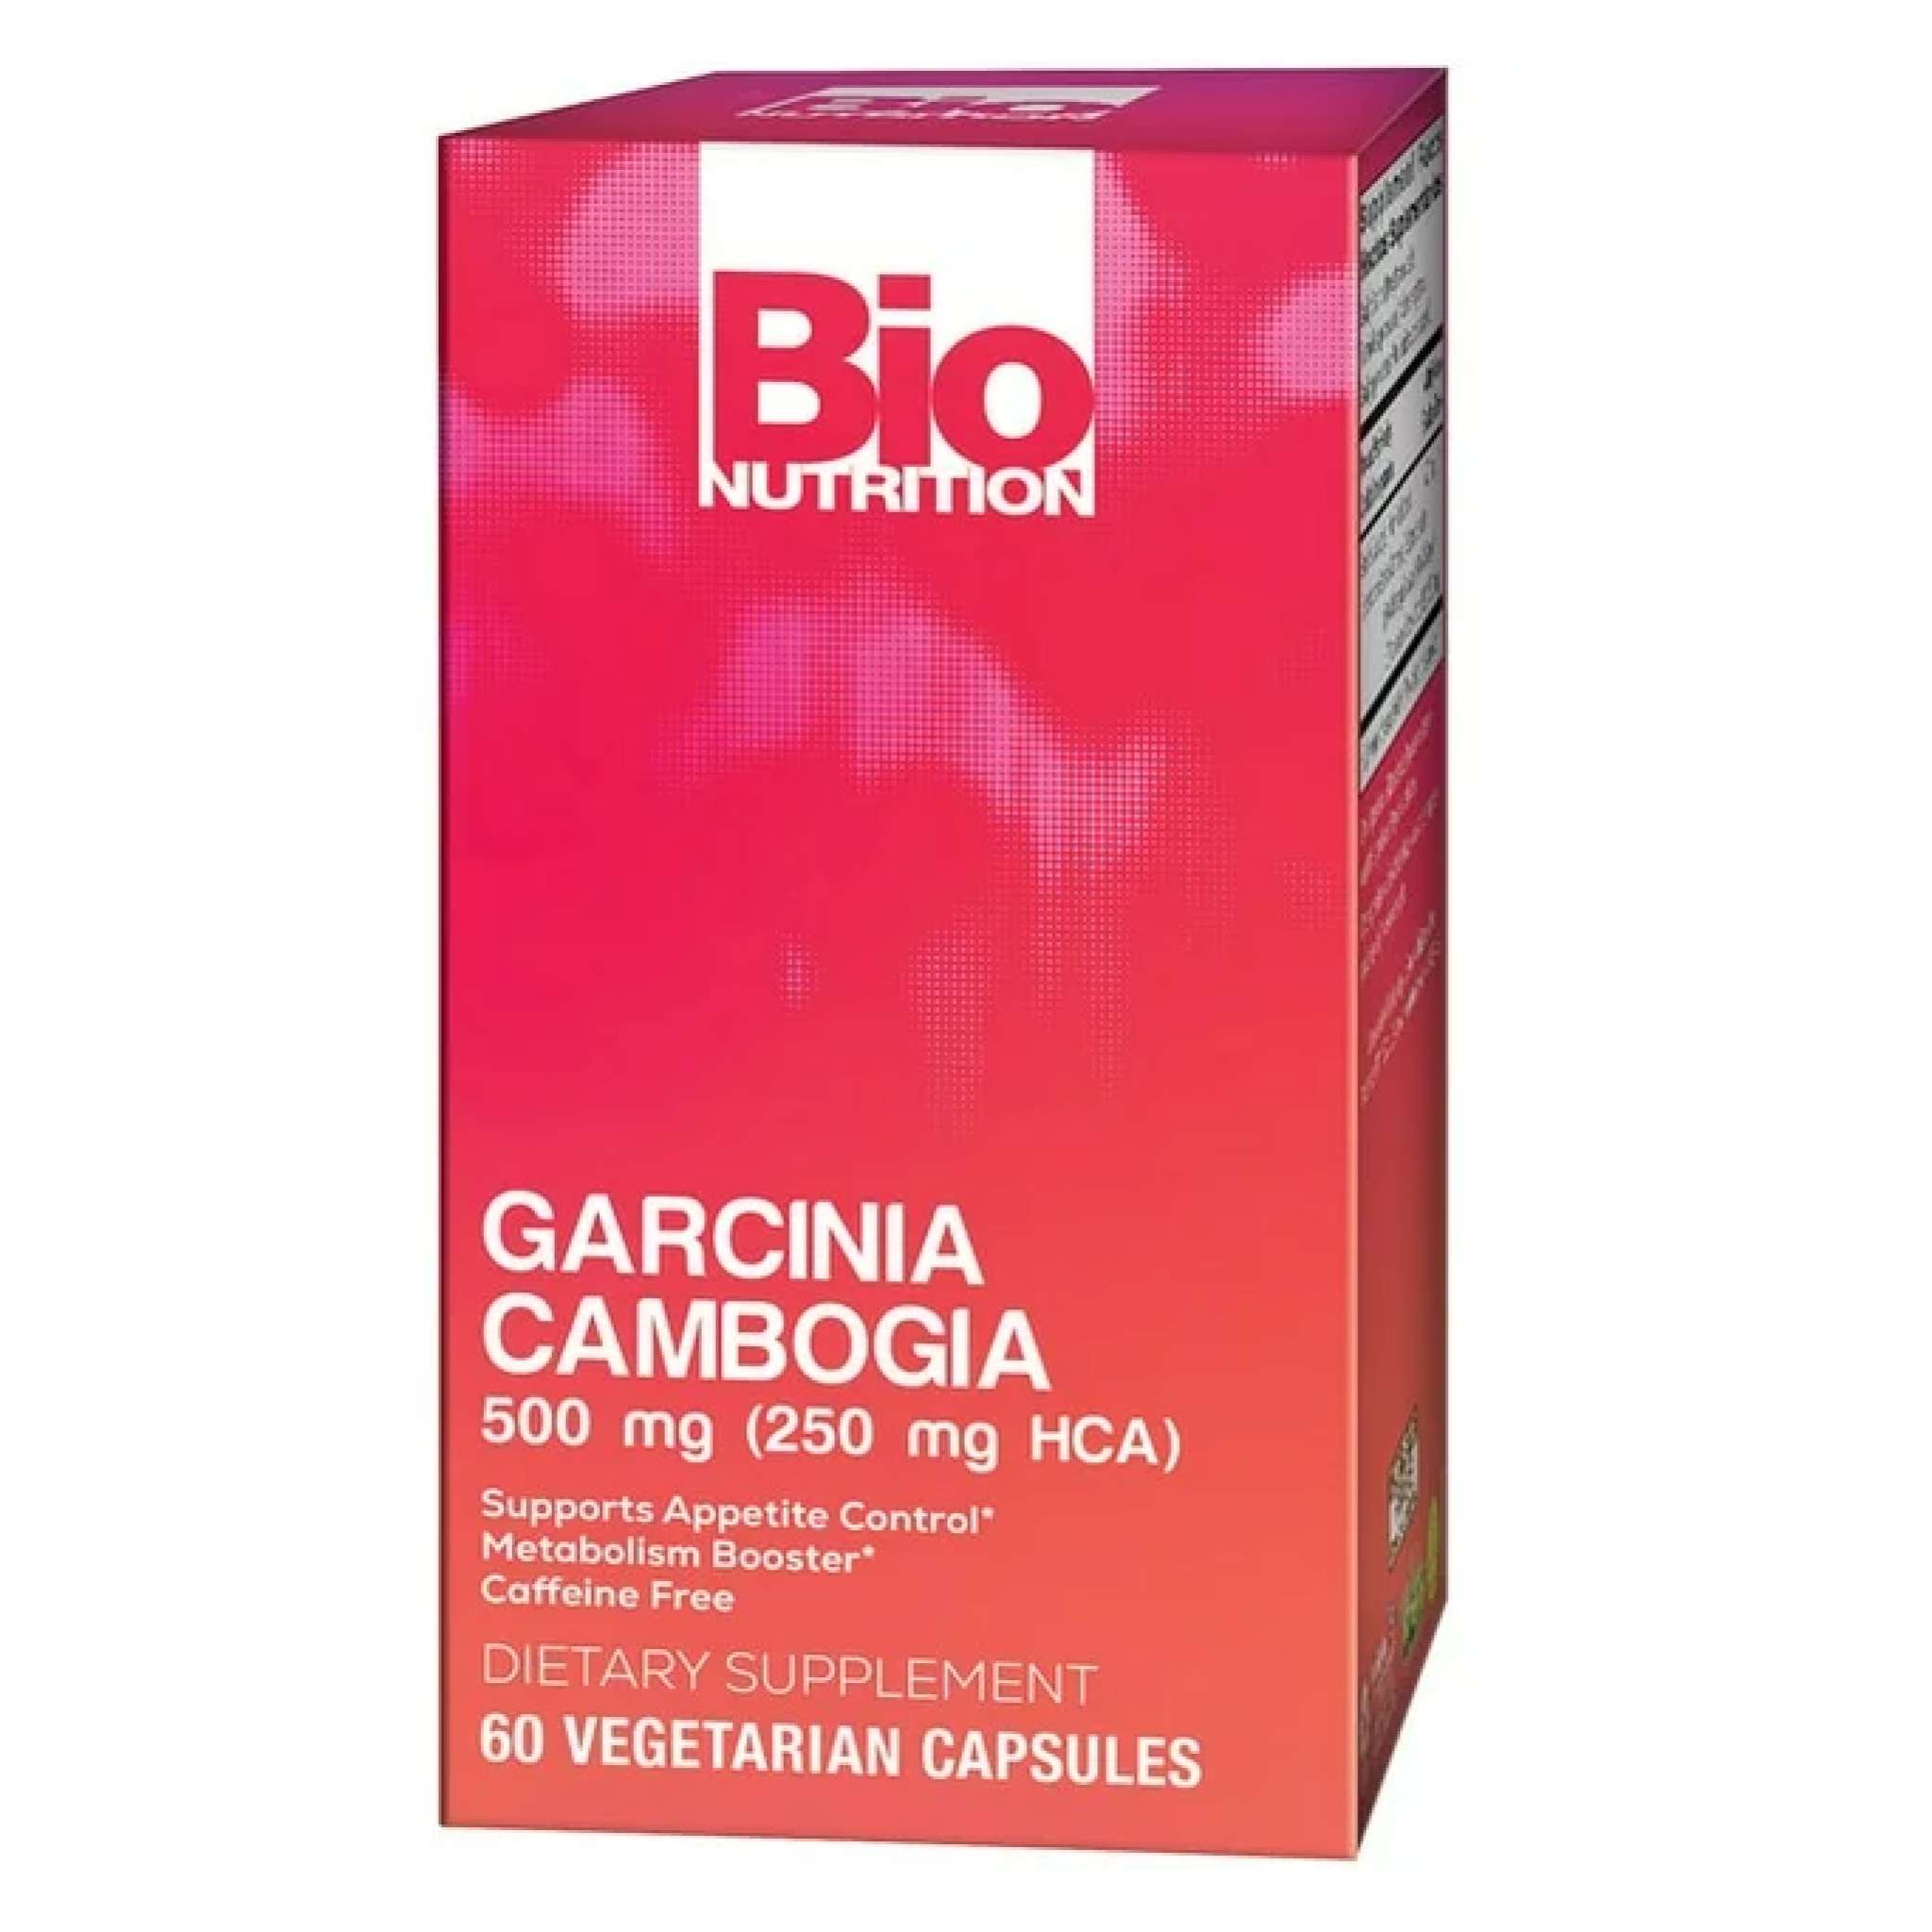 Bio Nutrition - Garcinia Cambogia 500 mg